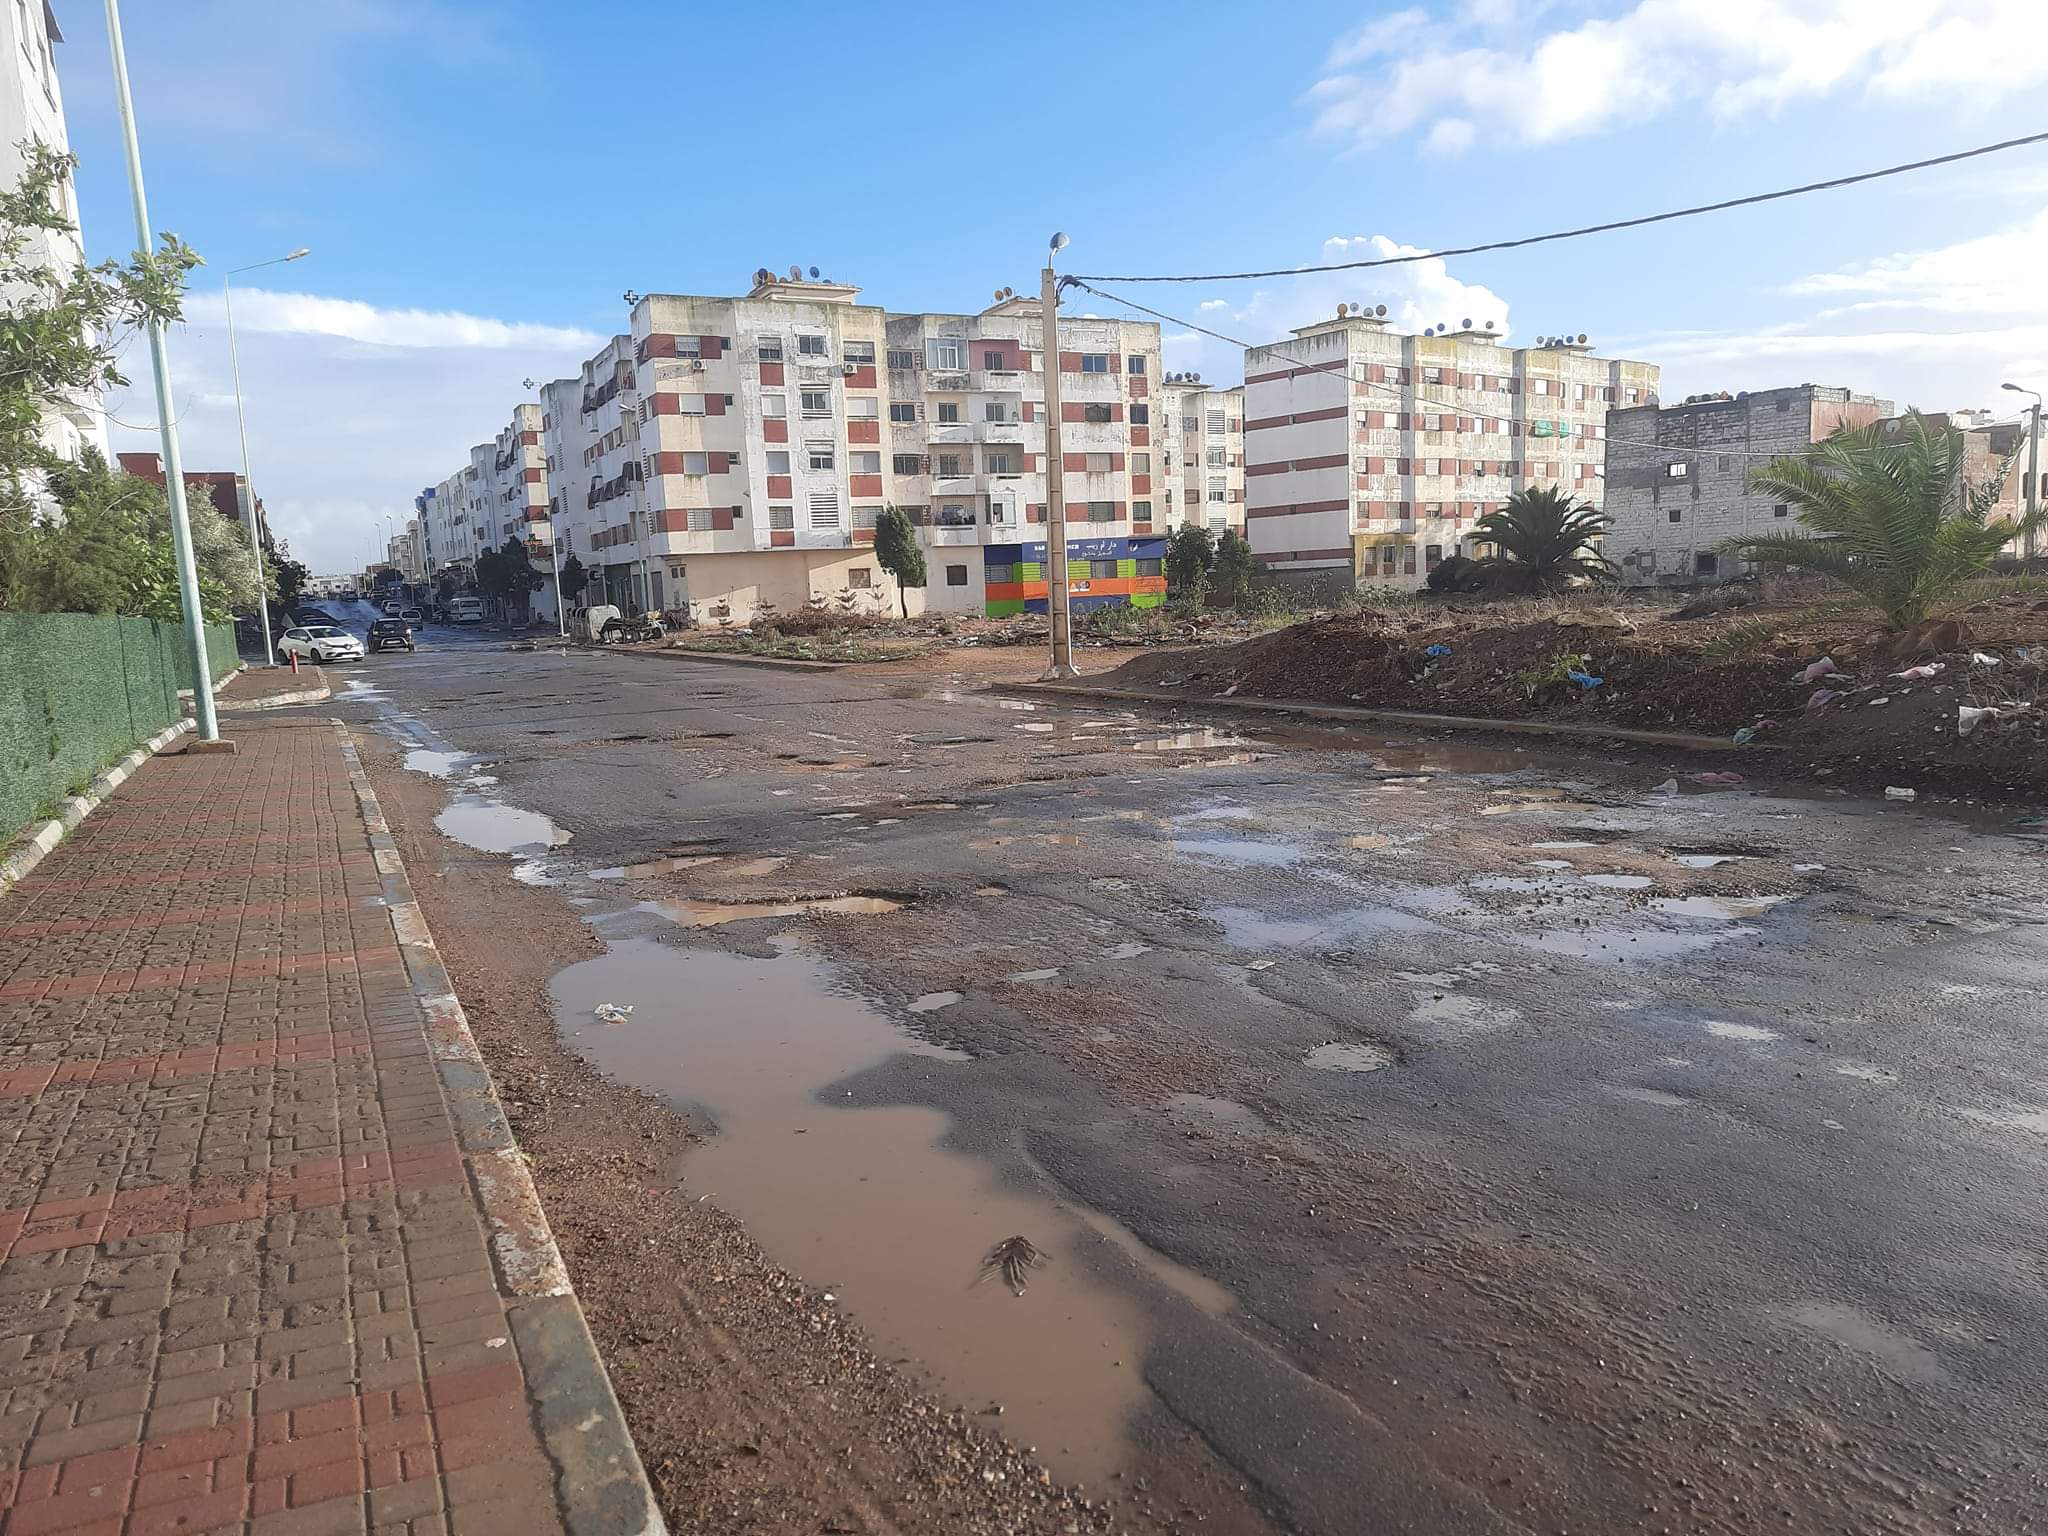 الأمطار تعري هشاشة البنية التحتية بعاصمة دكالة وشارع خليل جبران أكبر المتضررين 